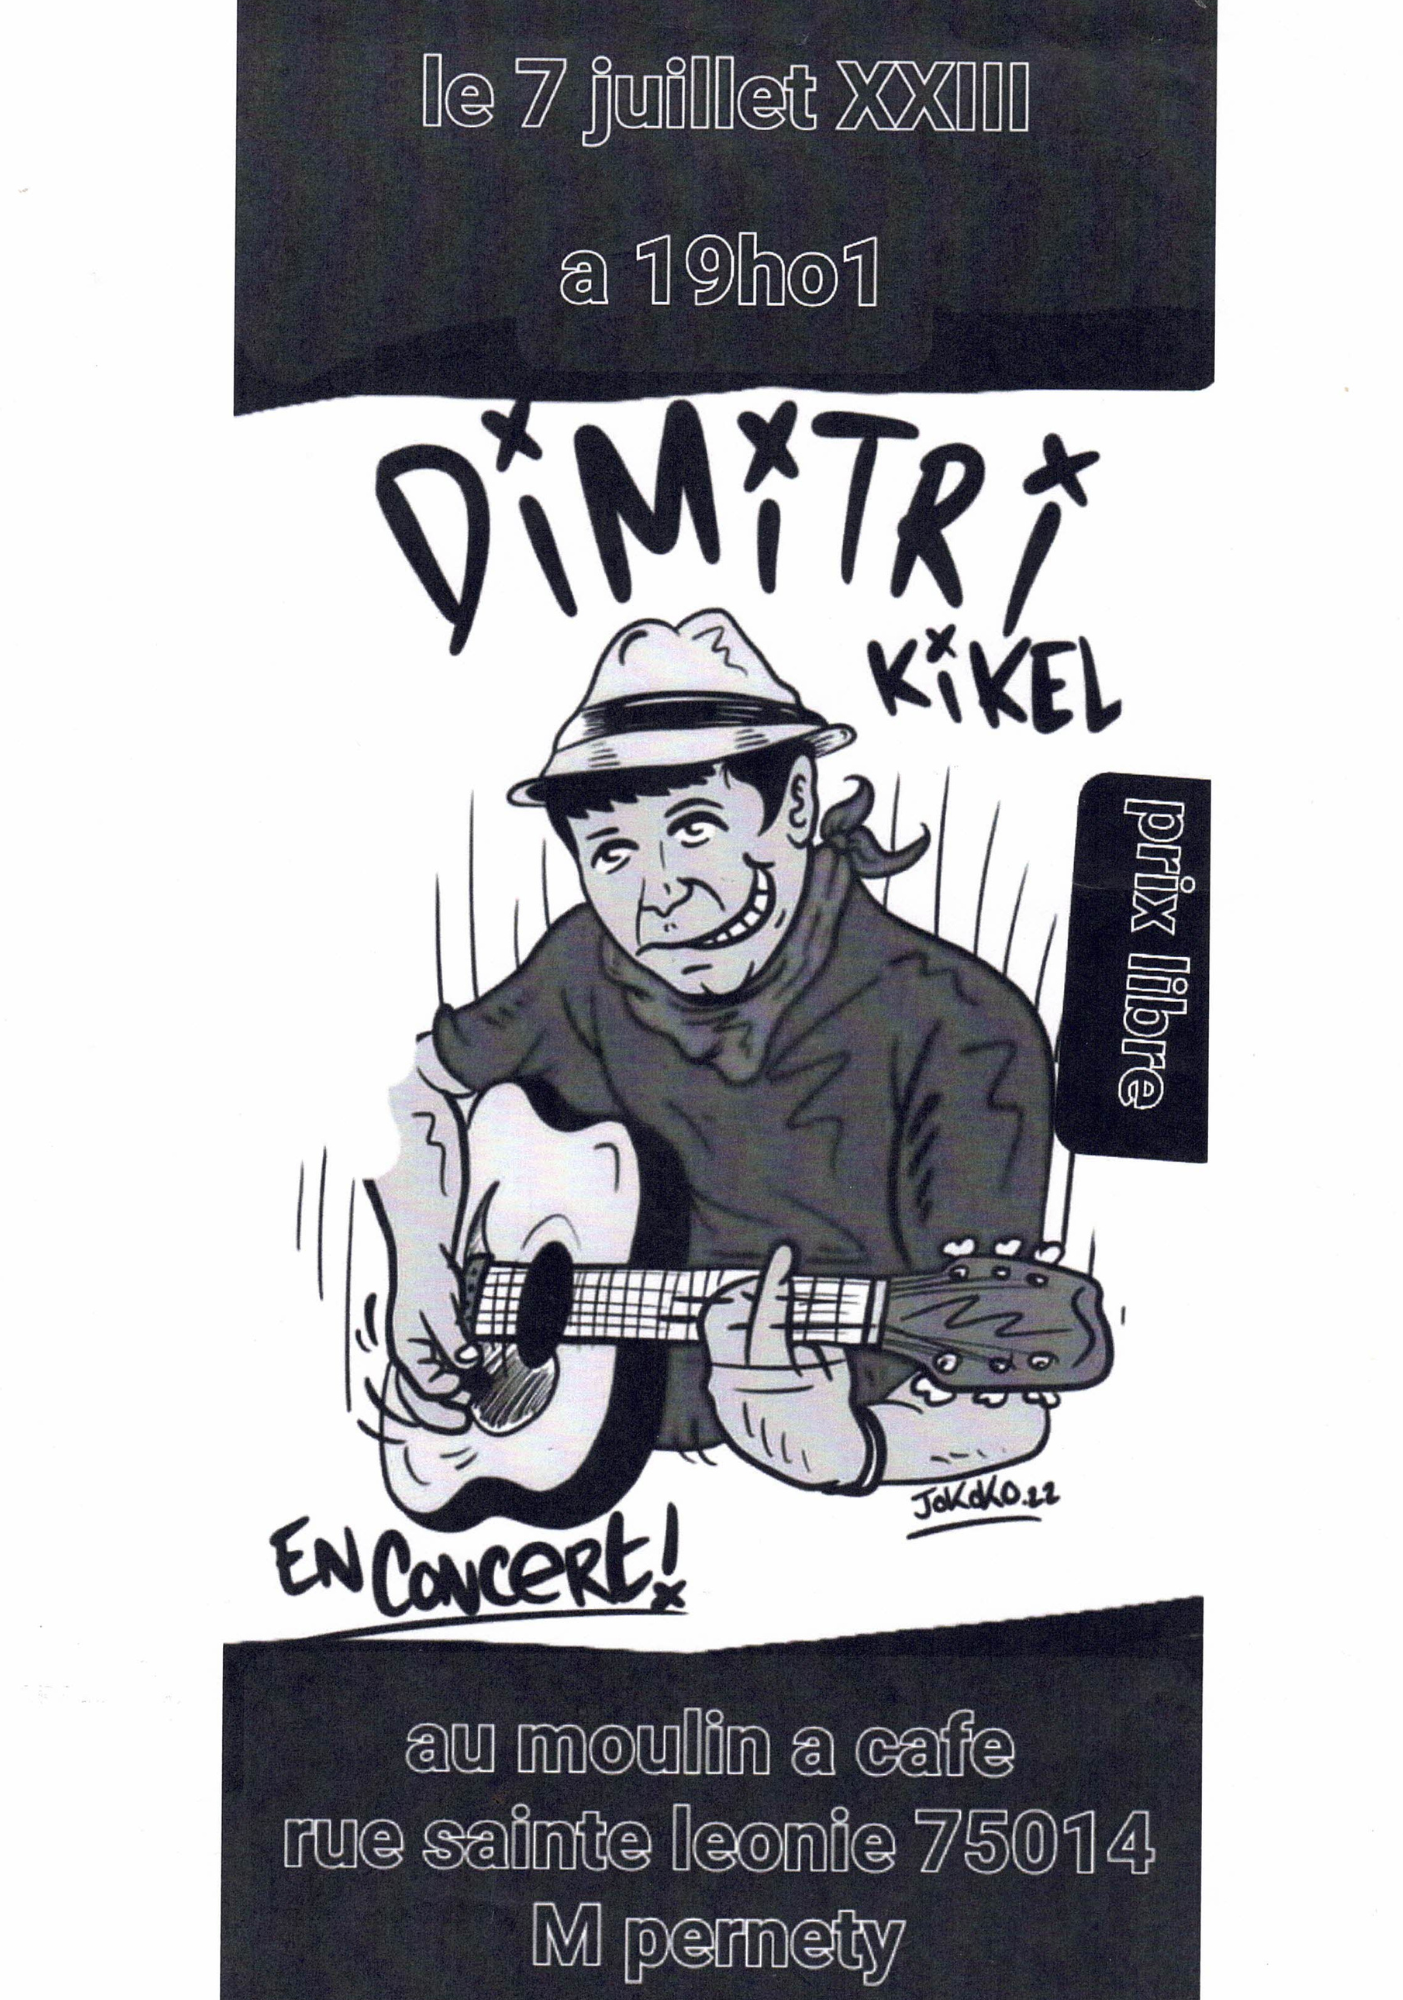 Concert : Dimitri kikel